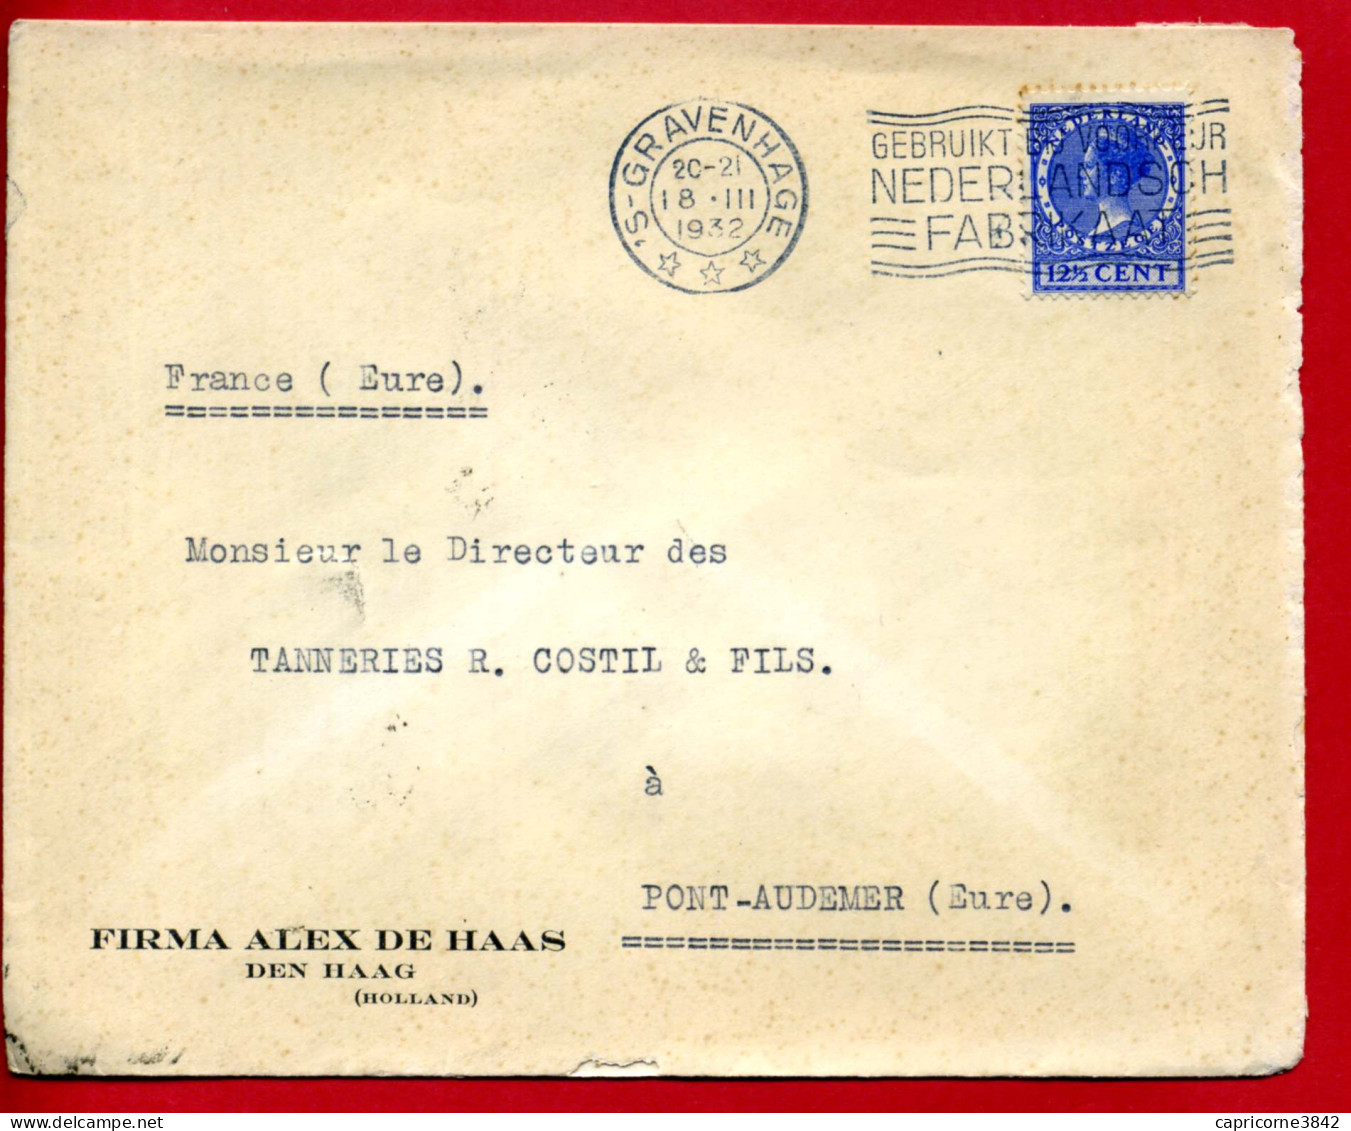 1932 - Pays Bas - Lettre De Gravenhage "GEBRUITK BIJ VOORKEUR NEDERLANDSCH FABRIKAAT" - Postal History